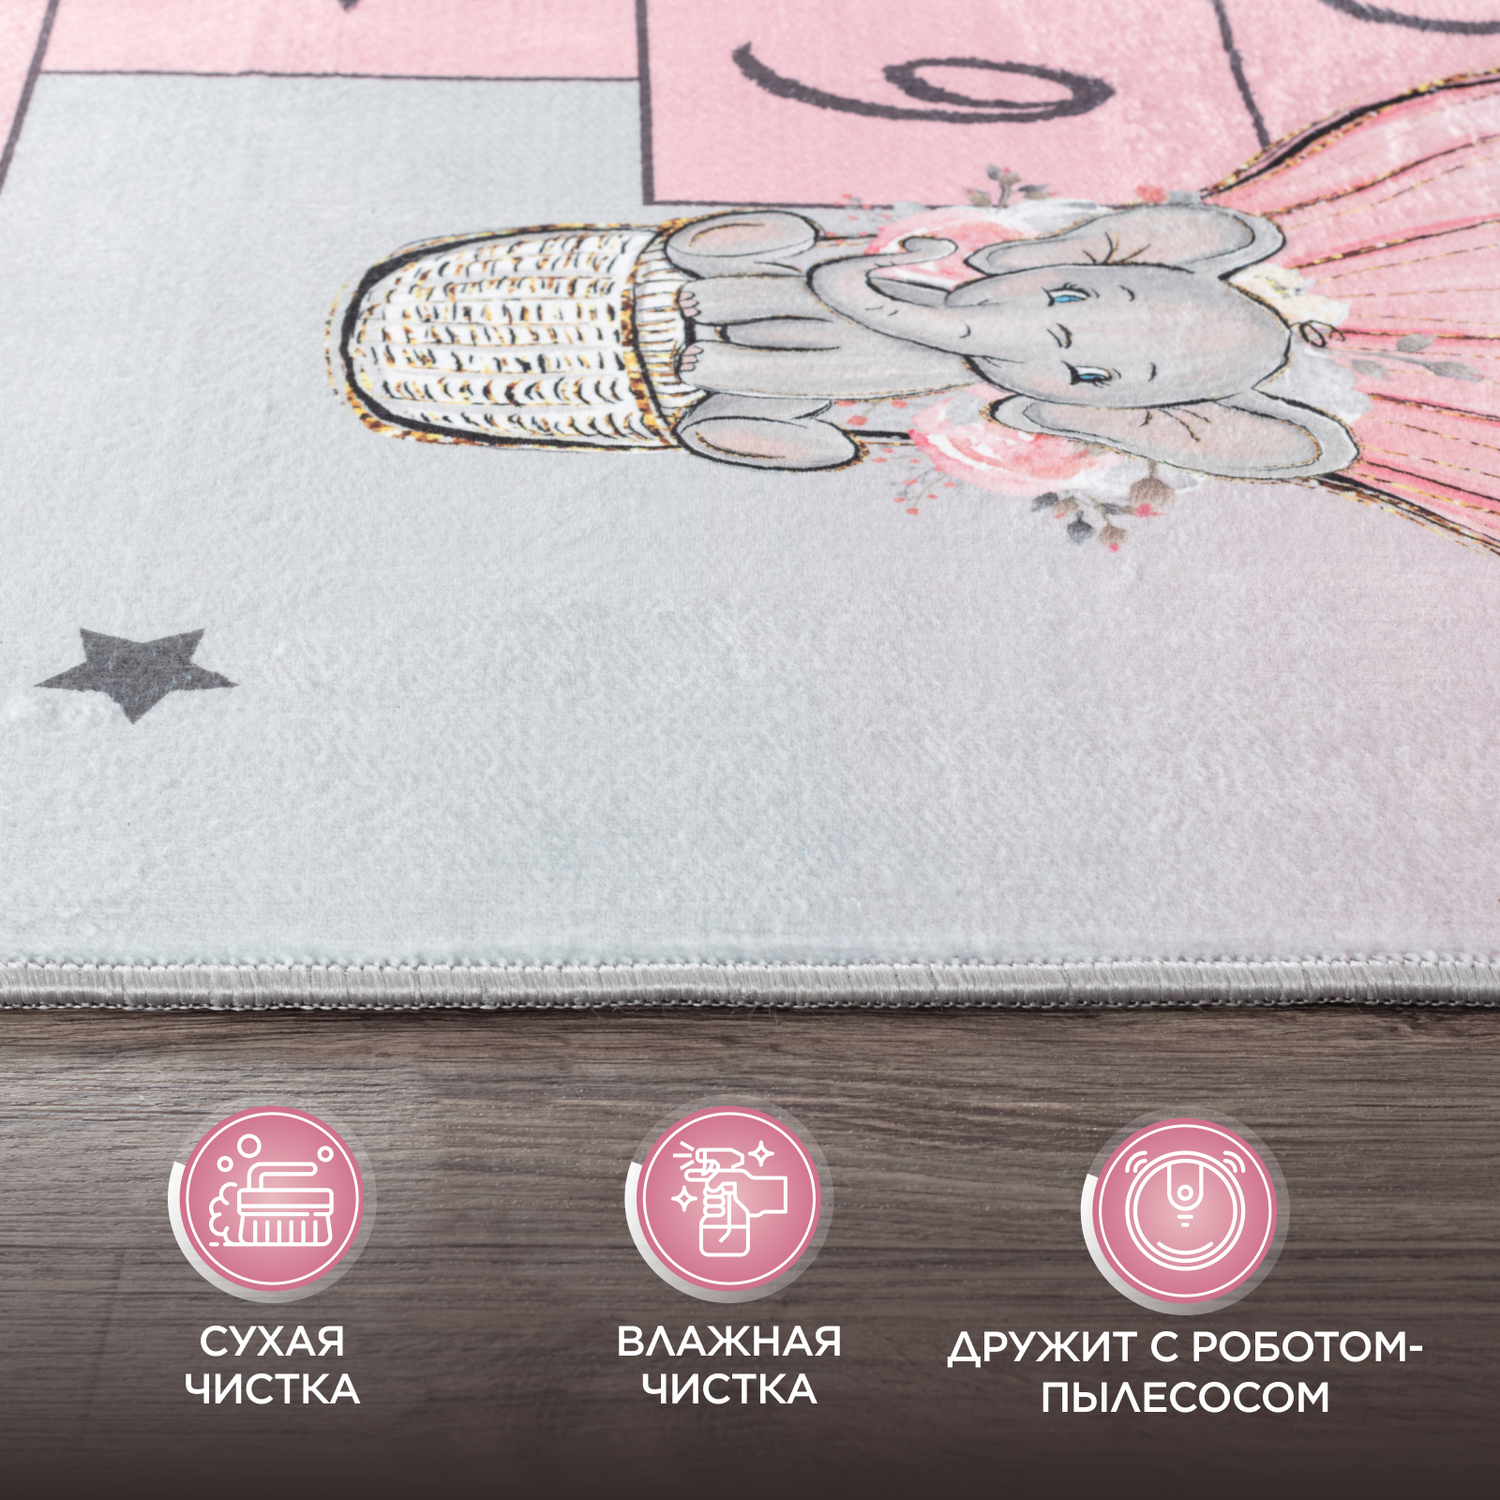 Ковер комнатный детский KOVRIKANA классики серый розовый 160см на 225см - фото 6